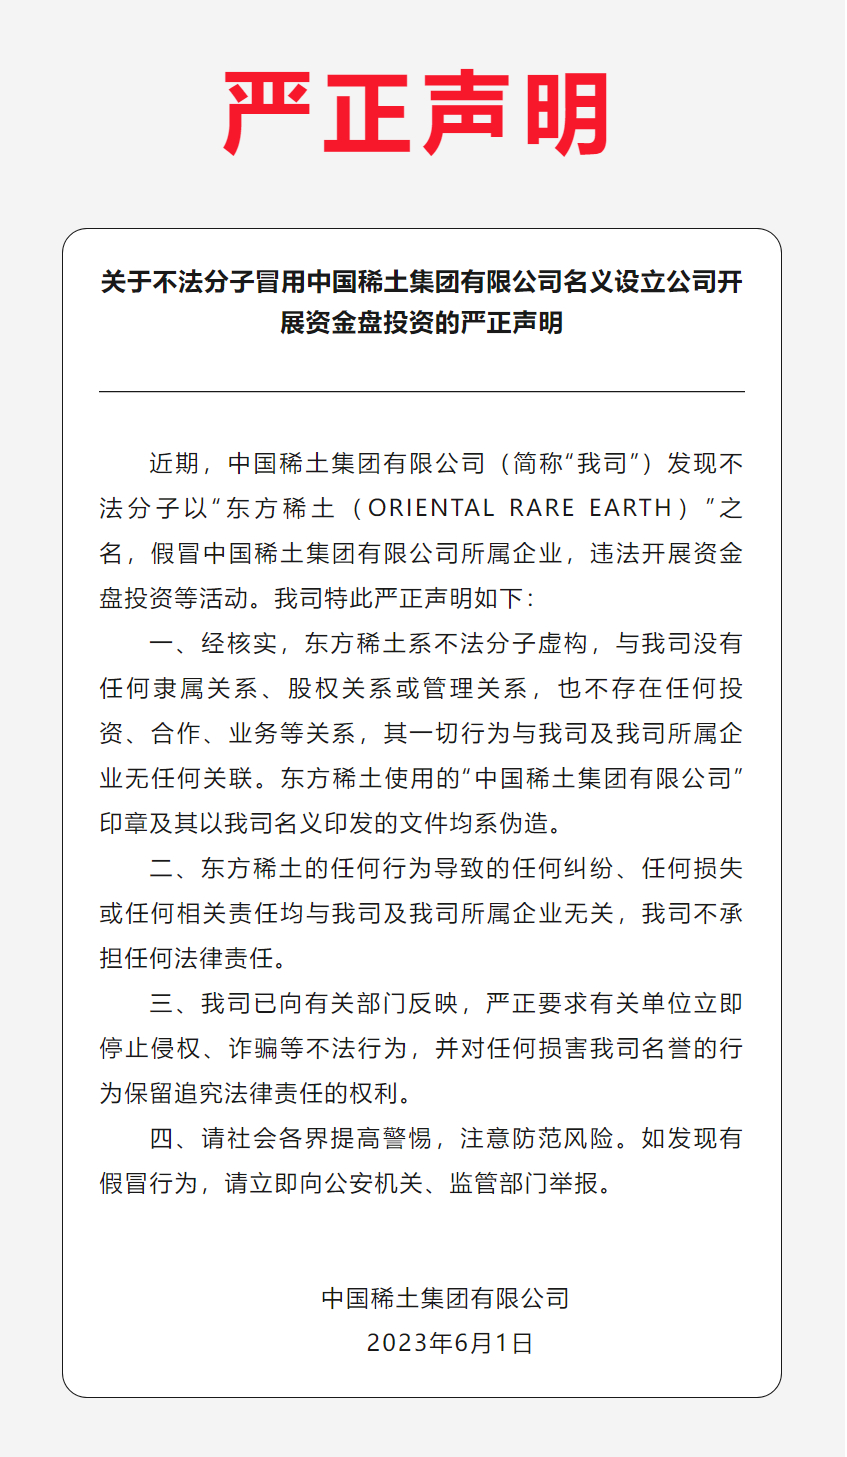 中国稀土集团：东方稀土系不法分子虚构，其一切行为与公司无关